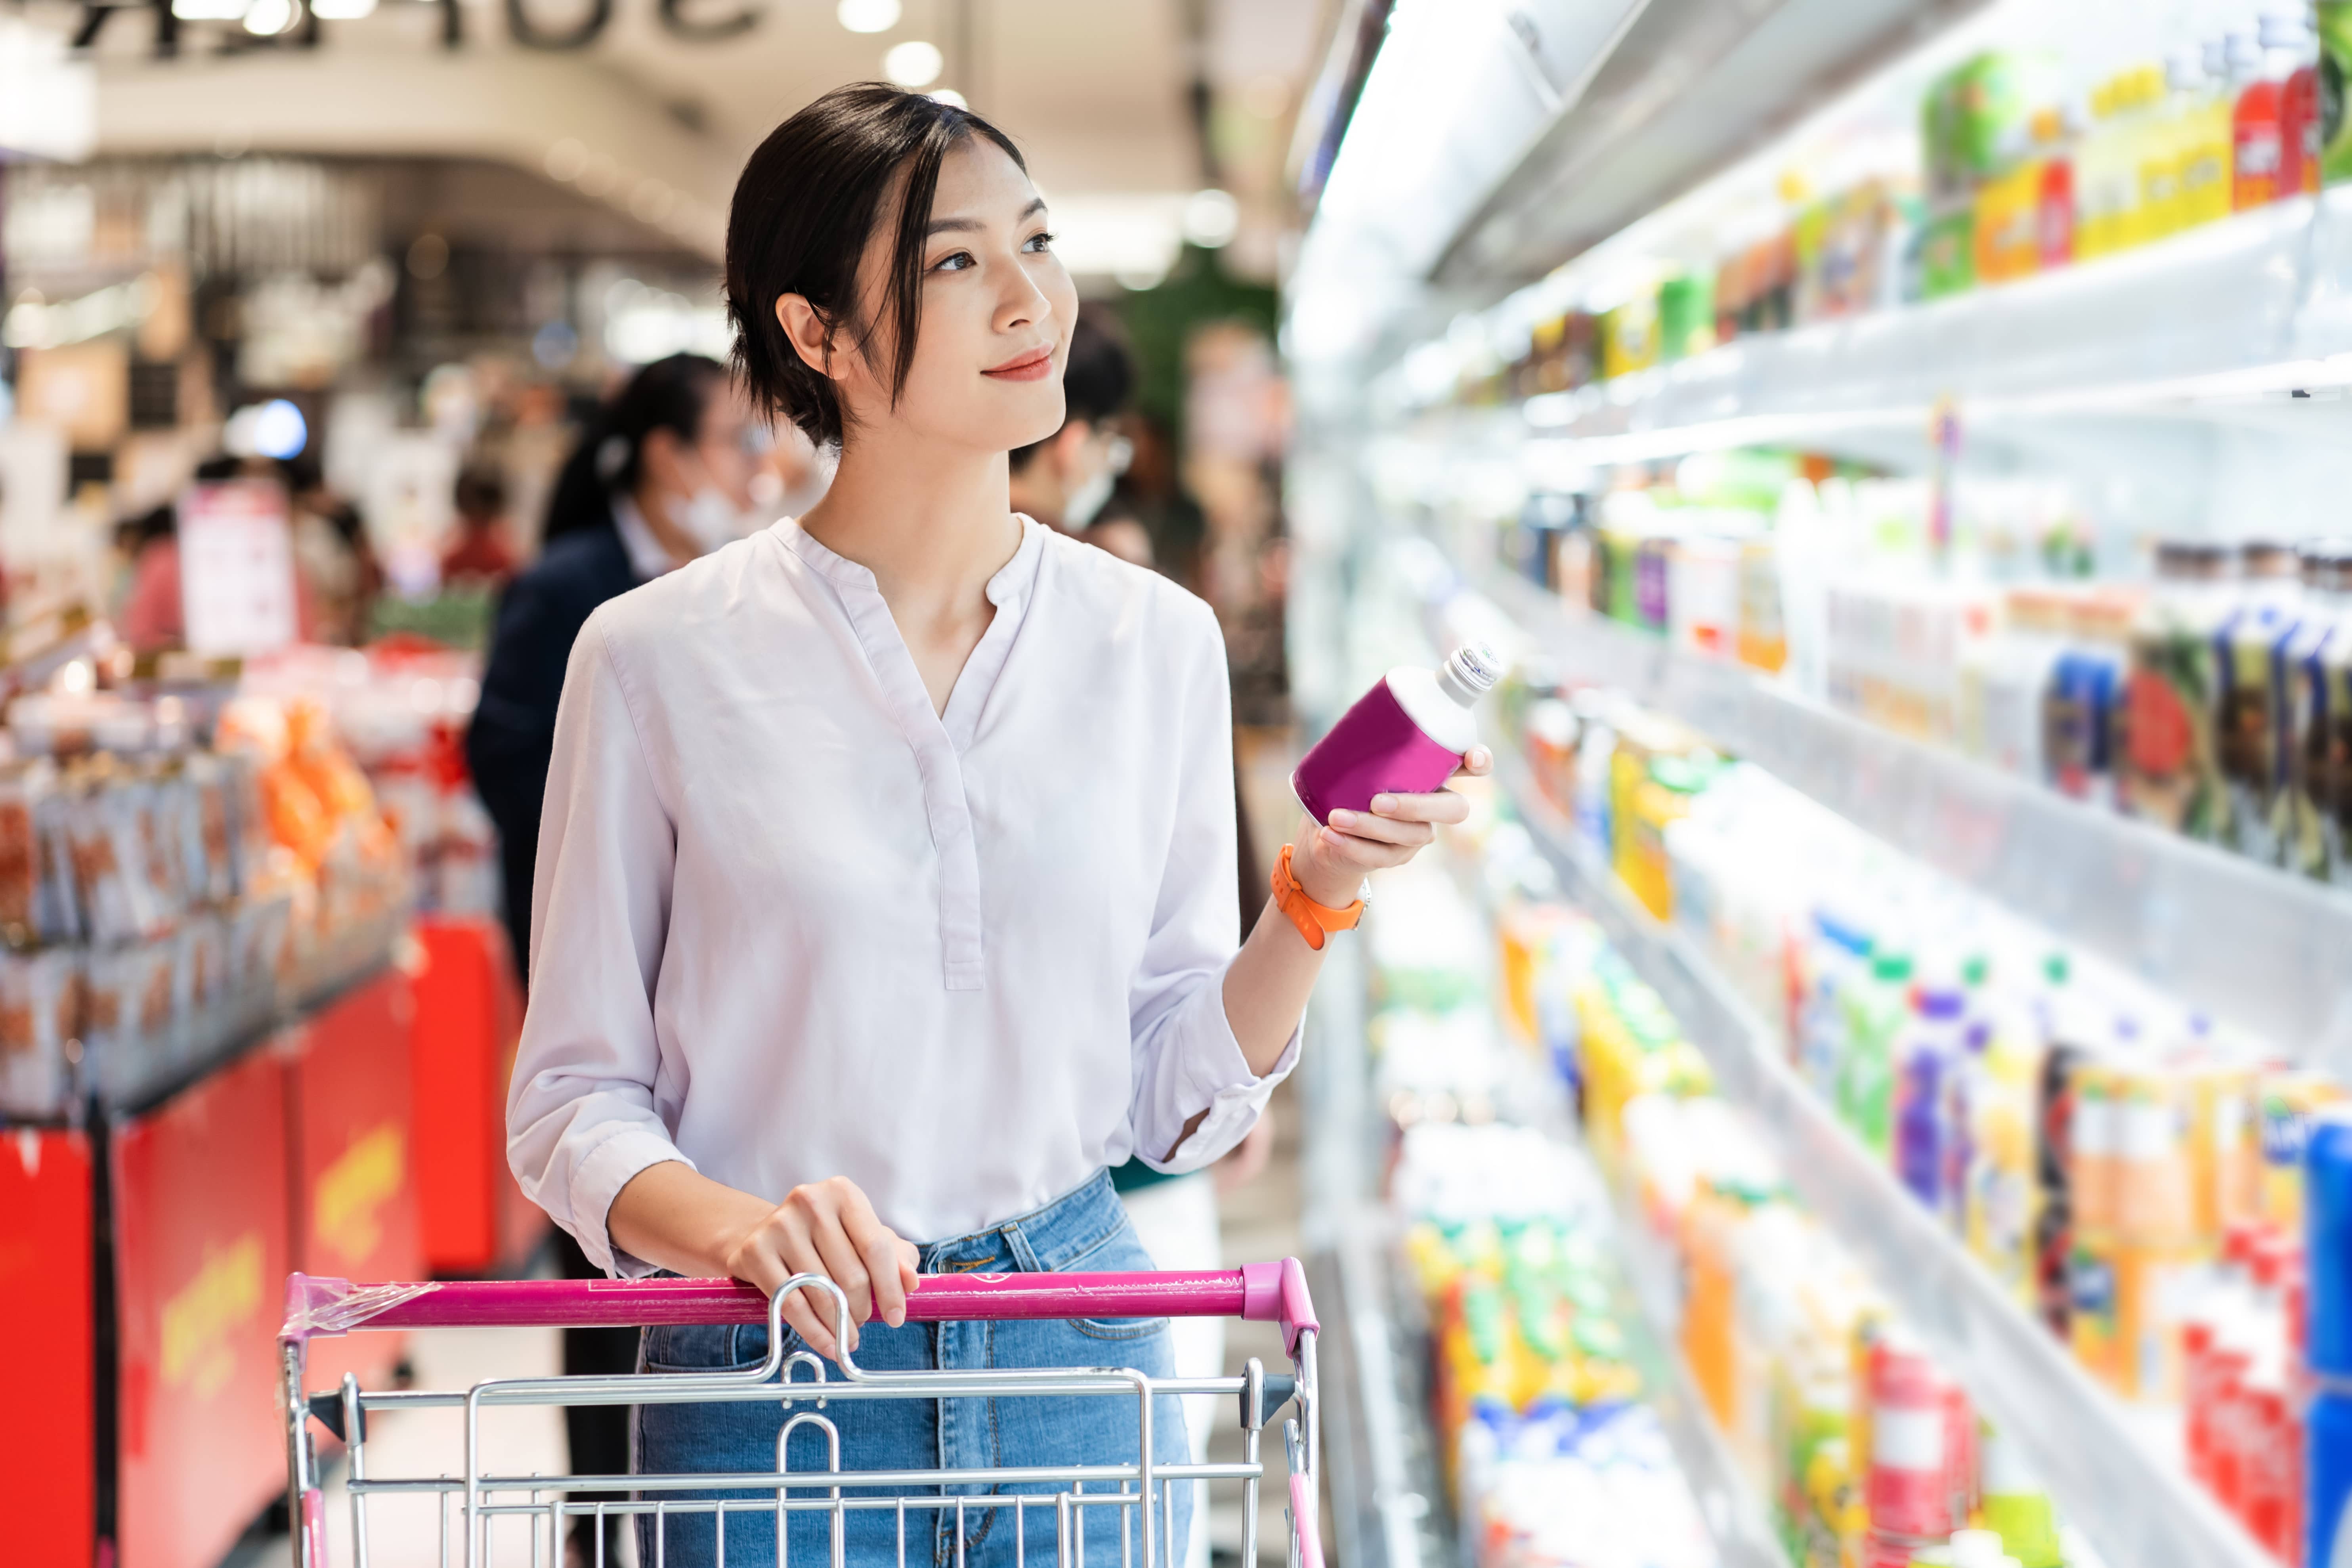 スーパーマーケットのM&A事例、合併や買収の動向を解説